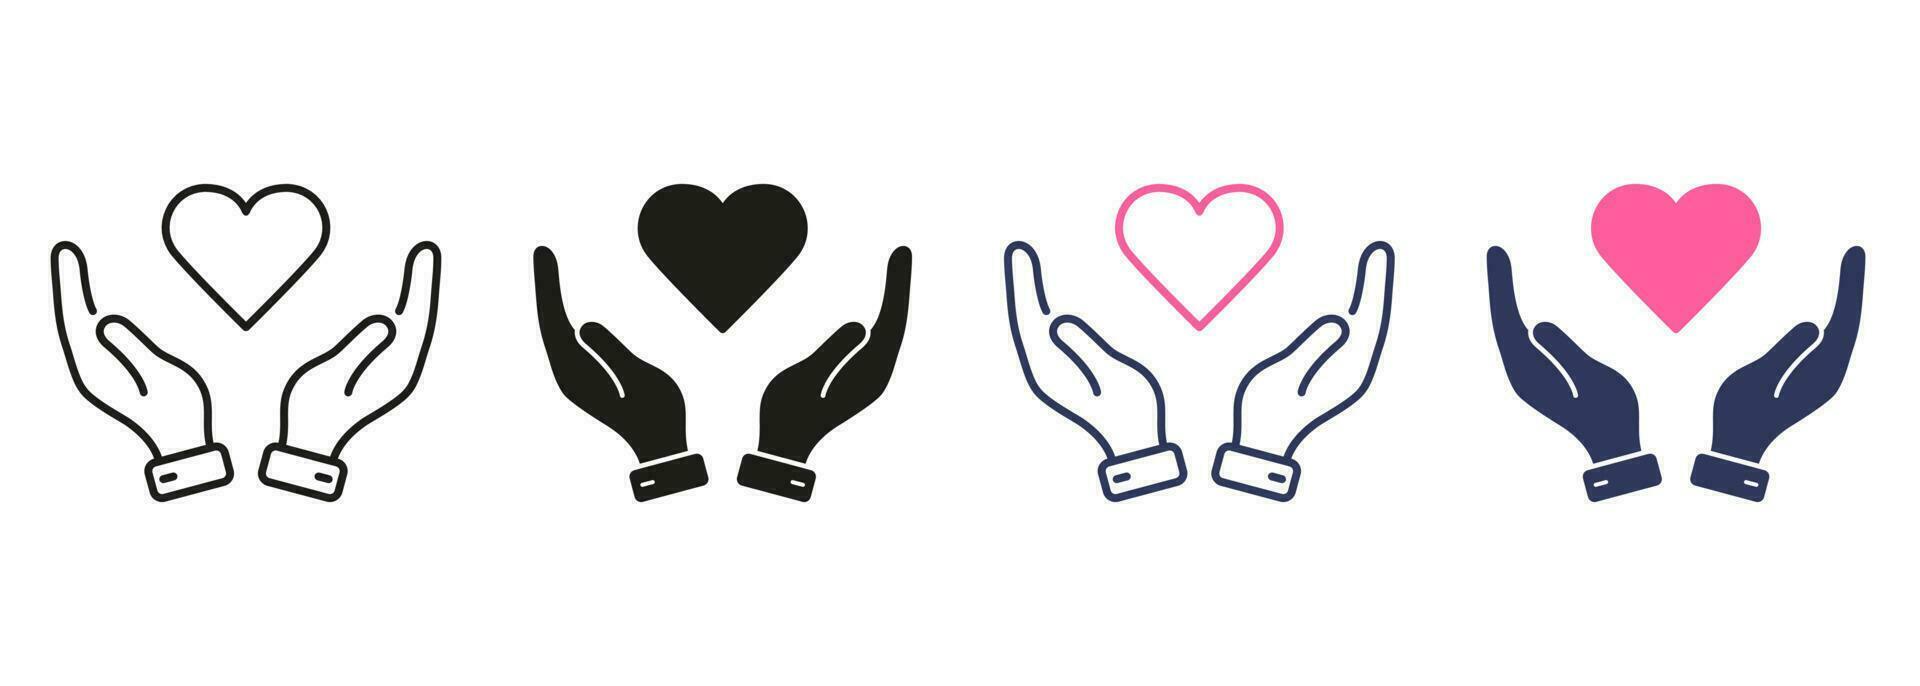 paz amistad, emocional apoyo símbolo recopilación. amar, salud, caridad, cuidado, ayuda línea y silueta color icono colocar. humano mano y corazón forma pictograma. aislado vector ilustración.